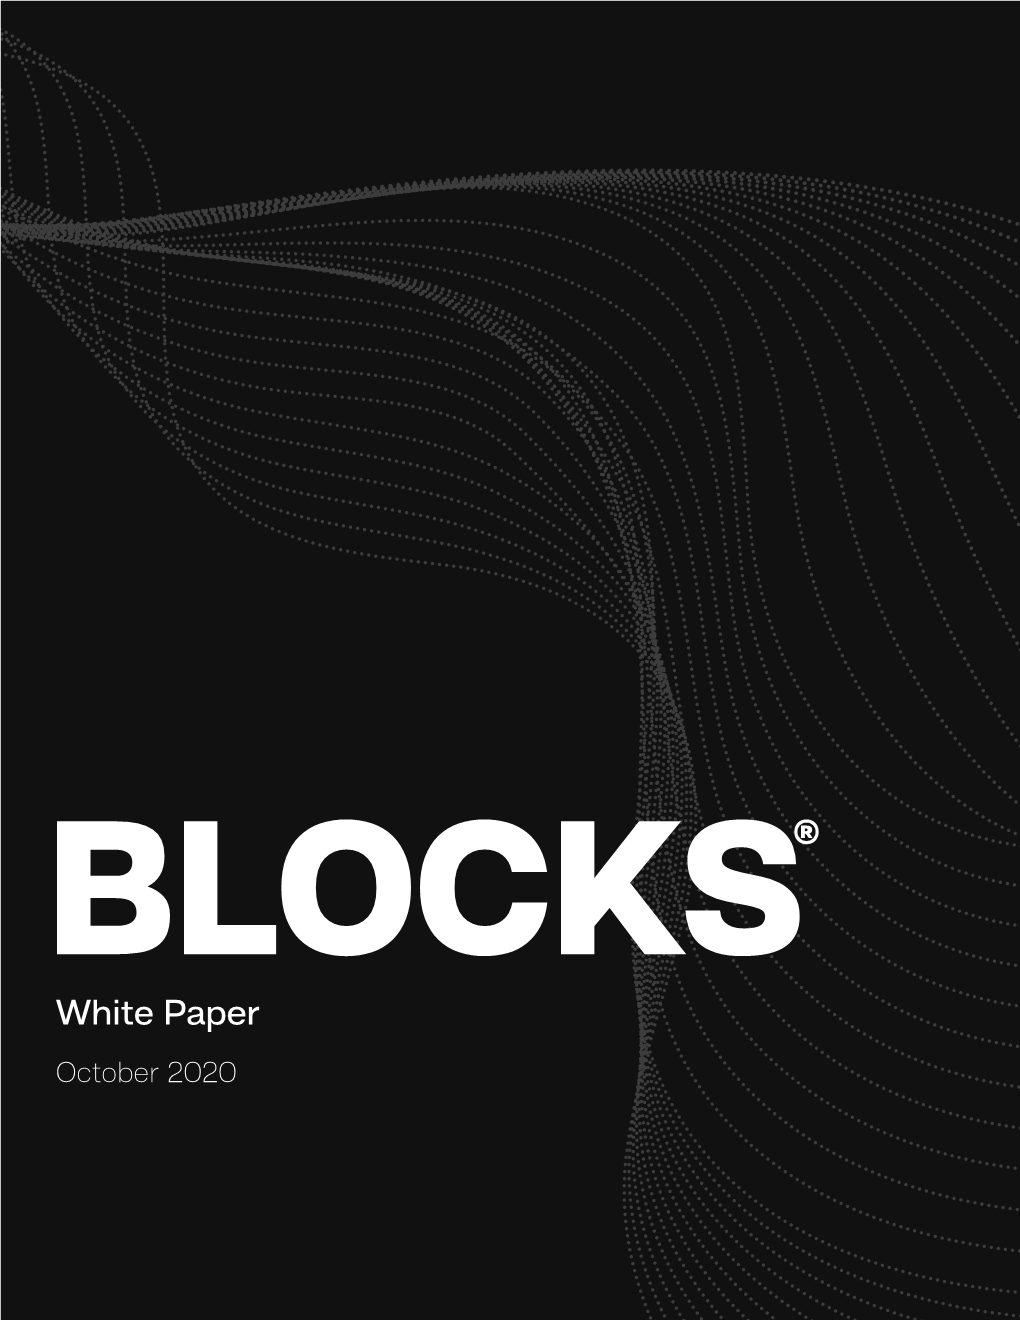 White Paper October 2020 BLOCKS®